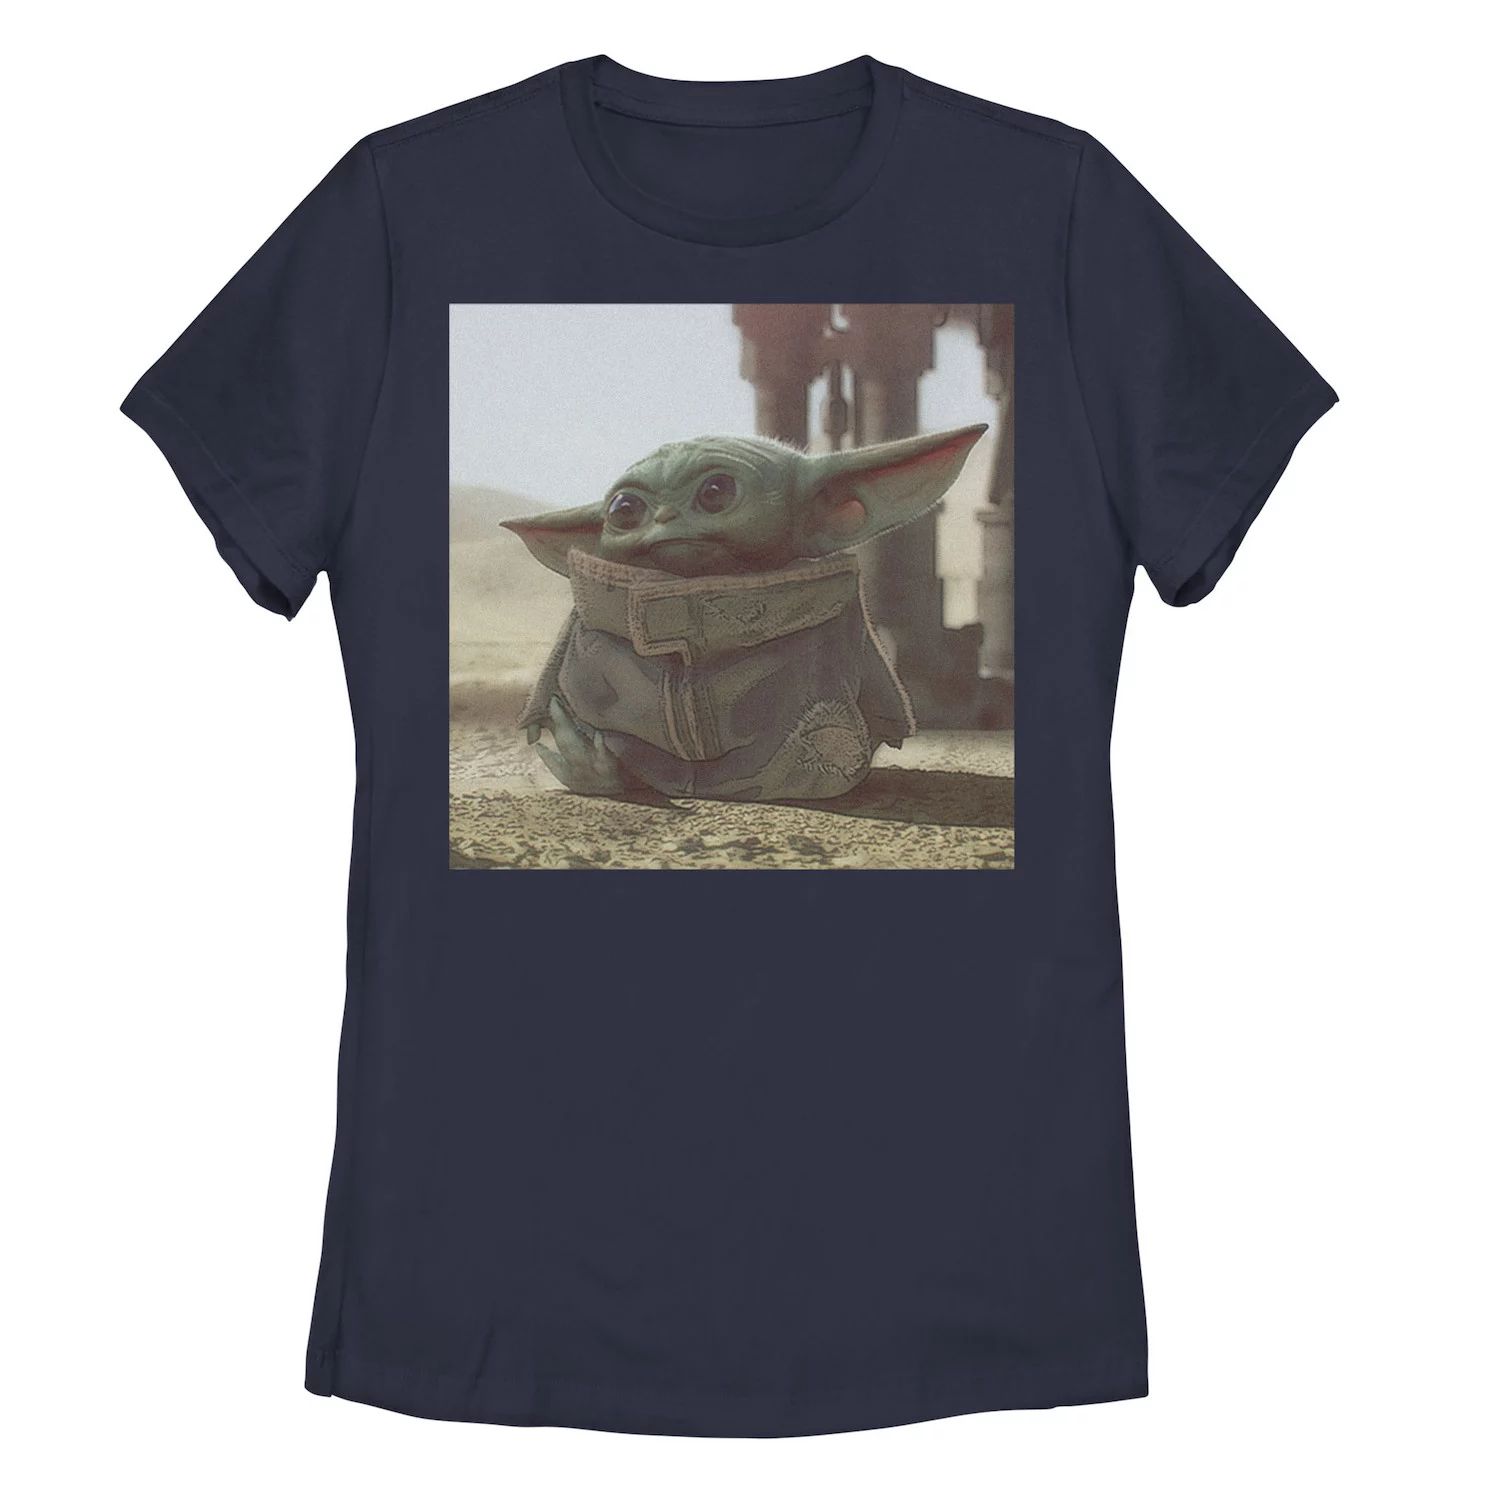 Детская футболка с рисунком «Звездные войны, мандалорец, ребенок, известный как Малыш Йода» Star Wars, темно-синий детская футболка с рисунком звездные войны мандалорец ребенок известный как малыш йода star wars